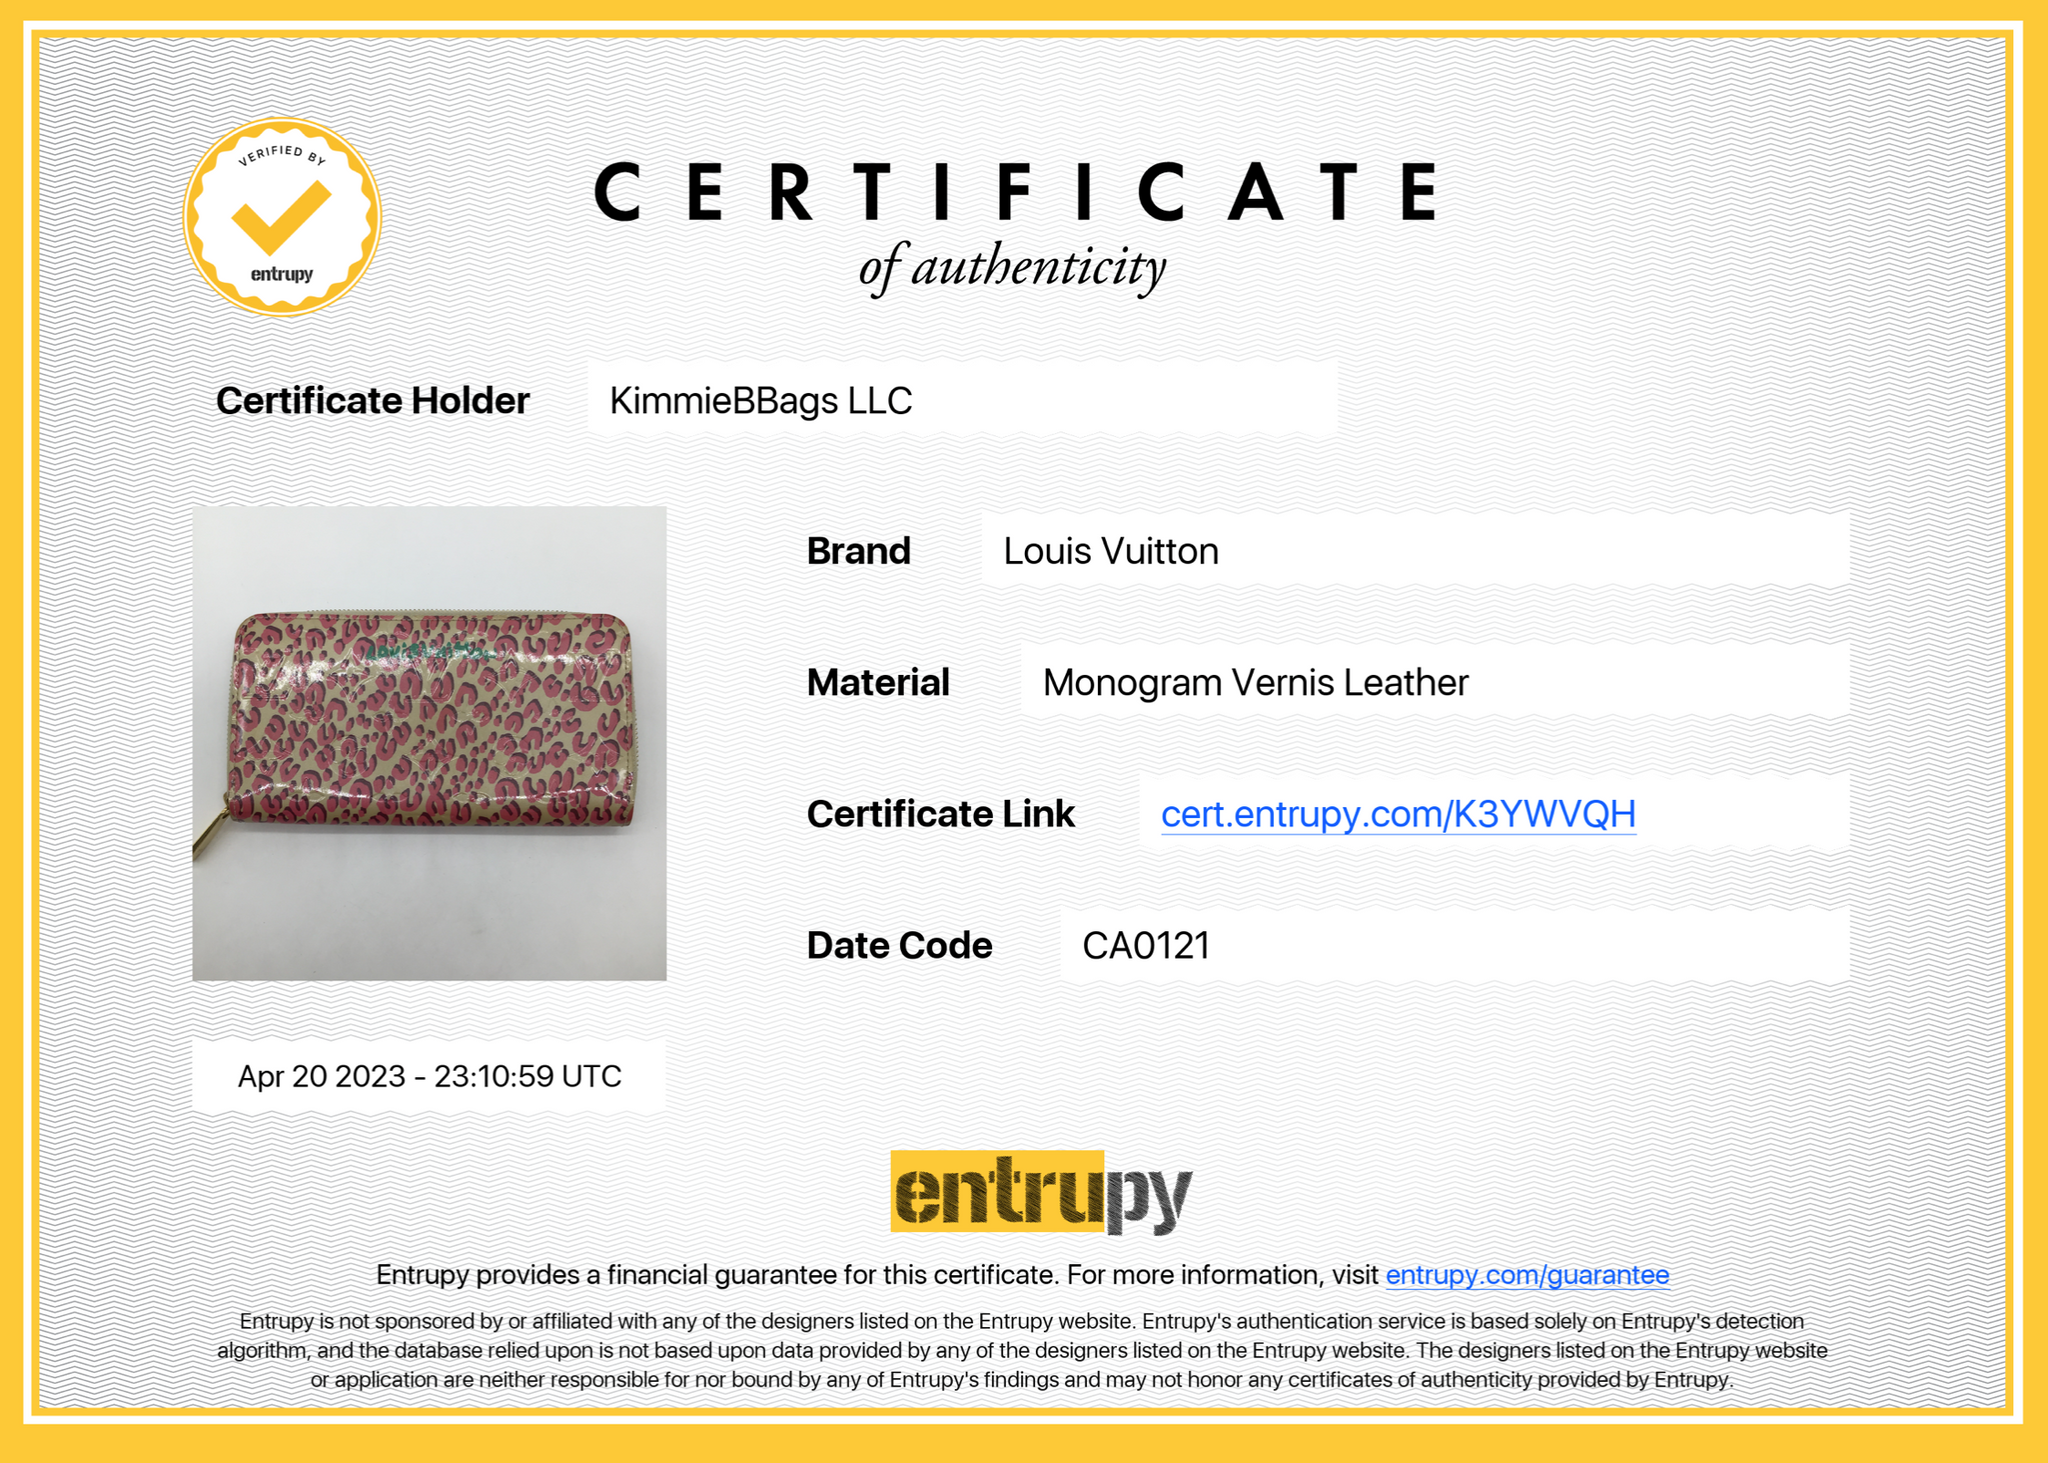 Louis Vuitton x Stephen Sprouse Monogram Leopard Insolite Wallet